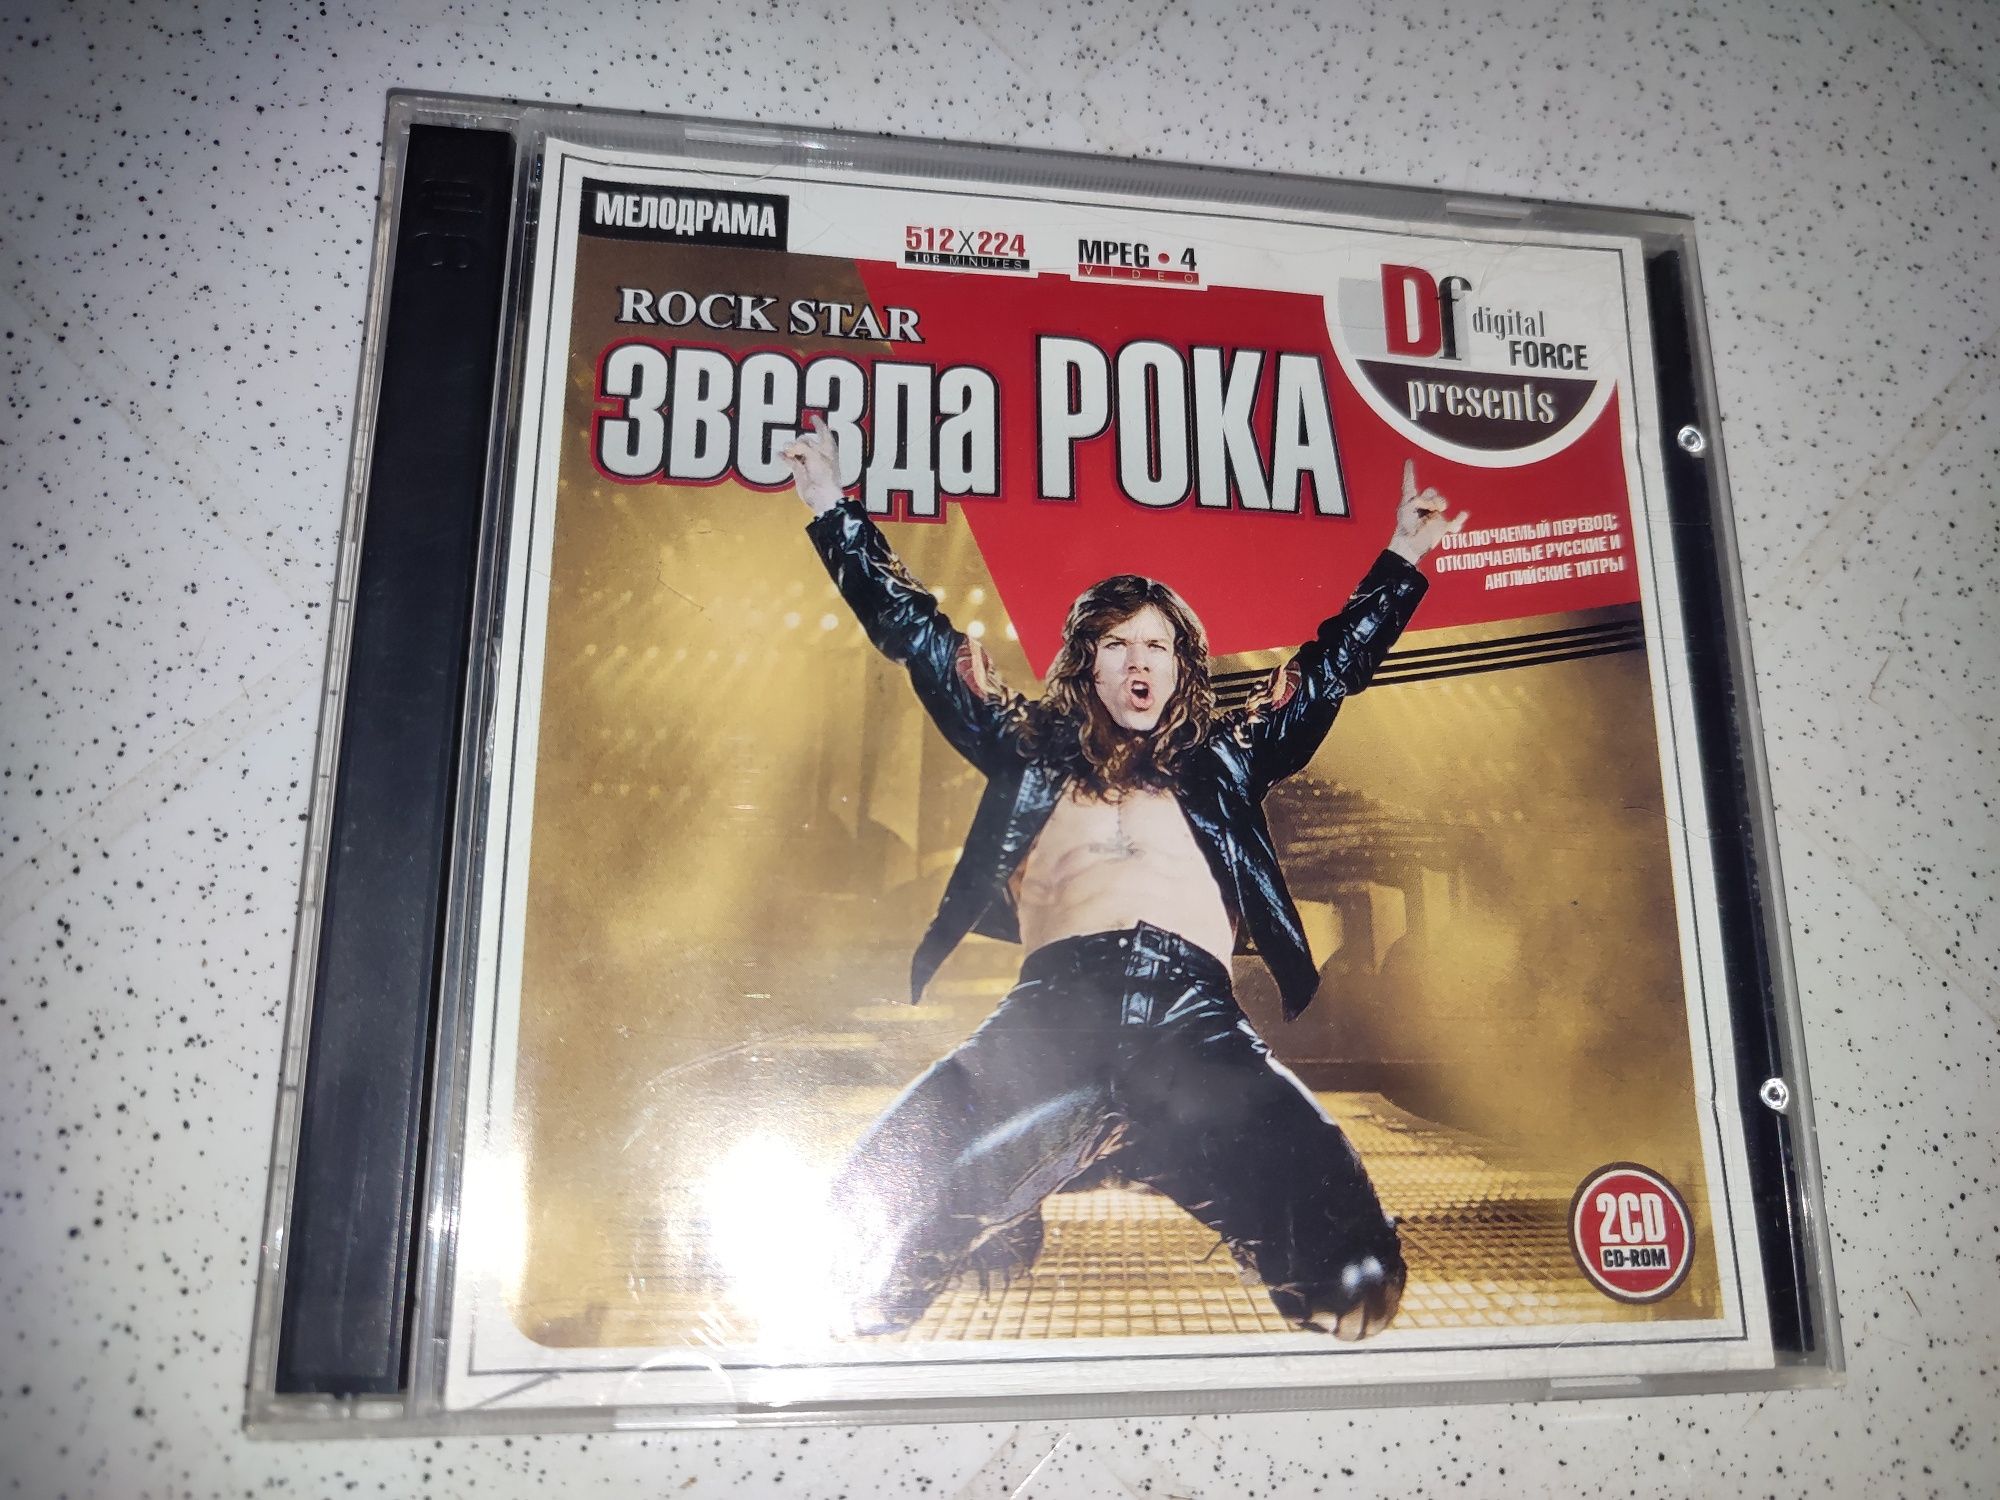 Художественный фильм "Звезда Рока" на 2х CD.